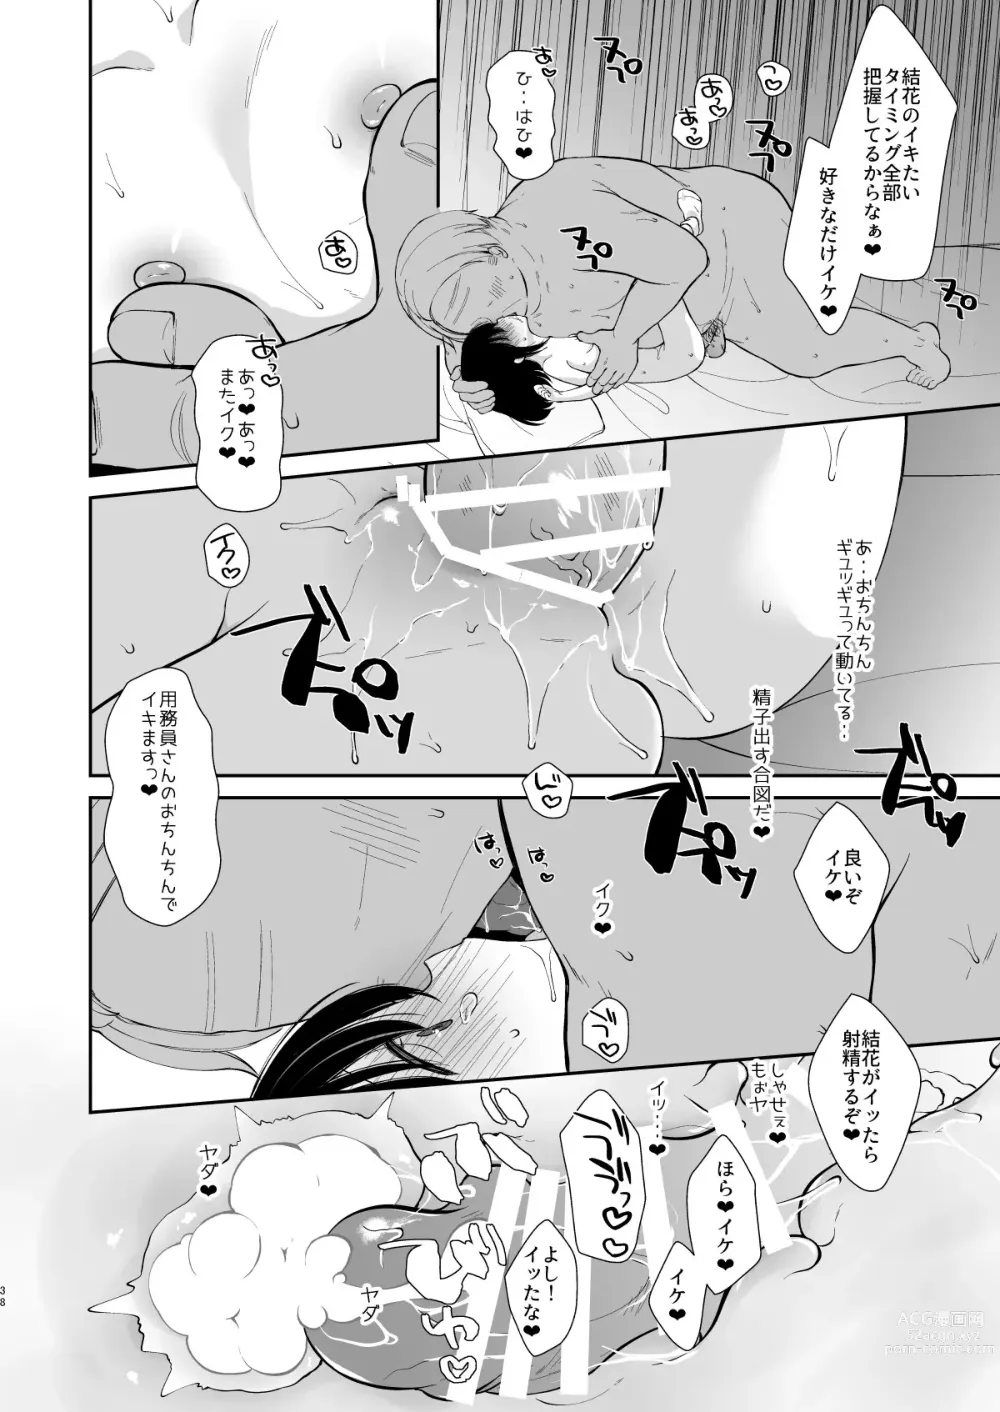 Page 72 of doujinshi Daisuki na Sensei no tameni Youmuin San to Etchi shimasu 1+2